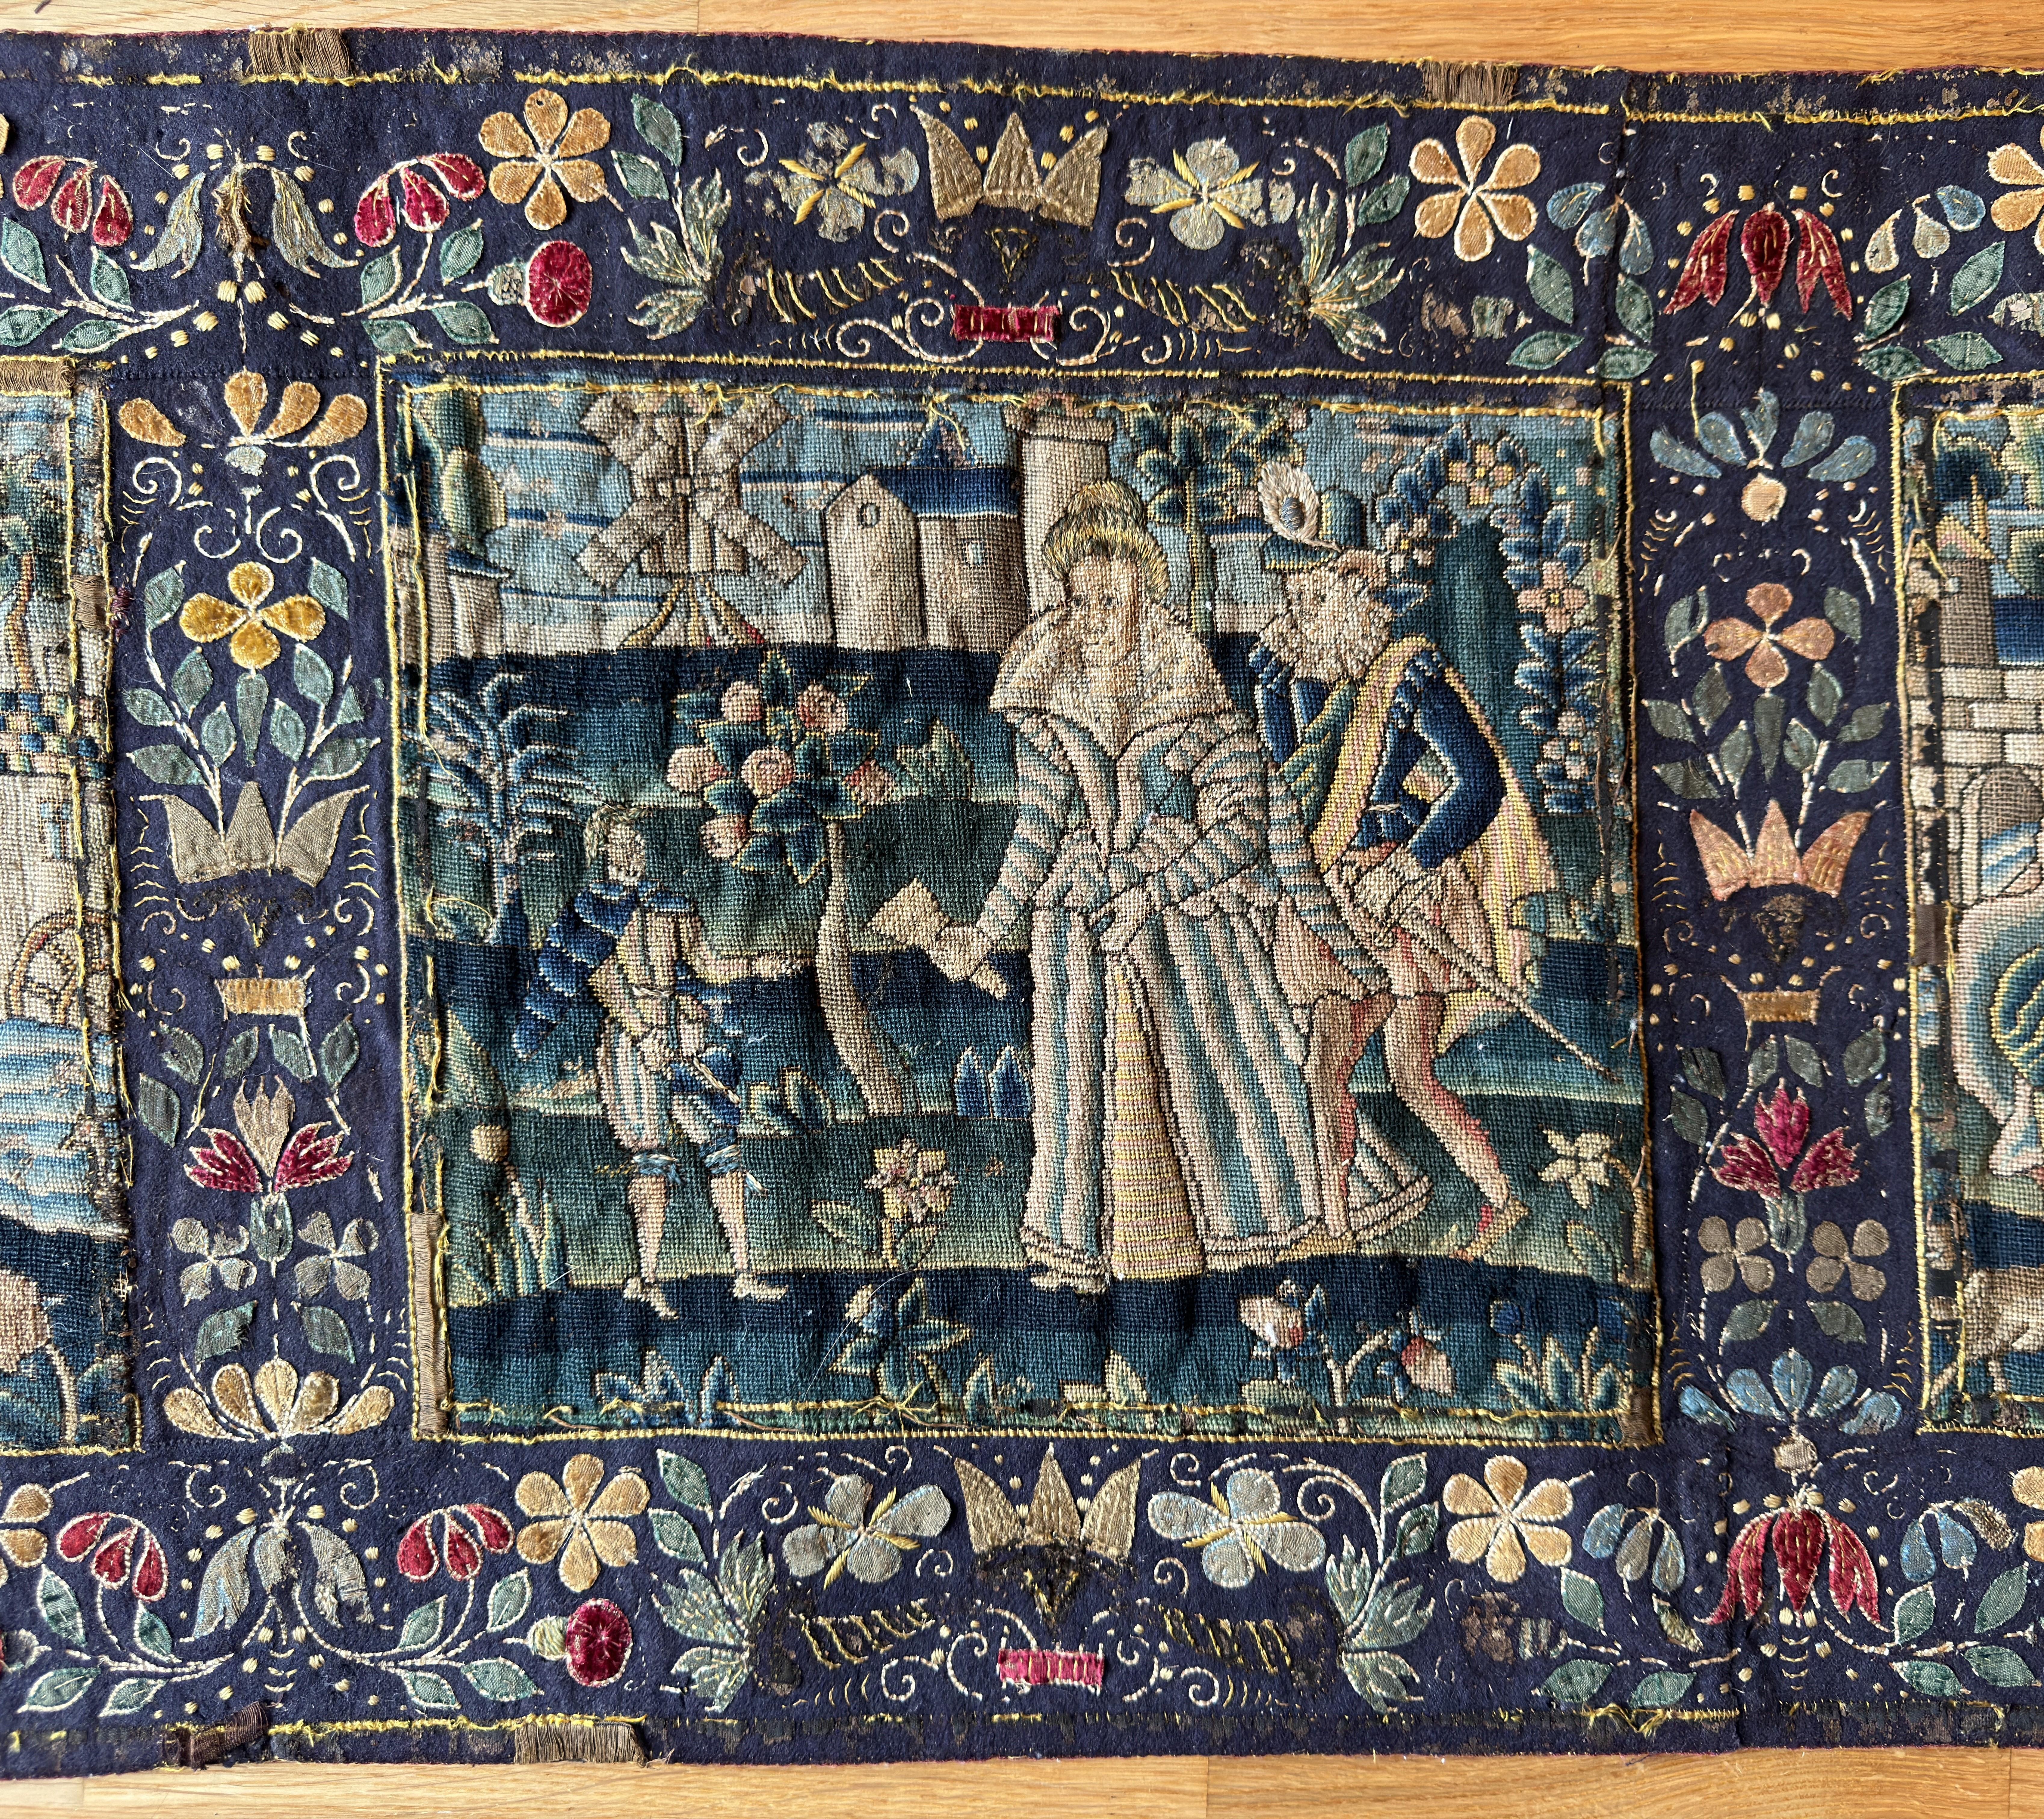 Un exceptionnel panneau de broderie anglaise du 17e siècle. Le long panneau, travaillé avec des fils richement colorés, est subdivisé en cinq panneaux narratifs et figuratifs, encadrés par une bordure appliquée de fleurs en filigrane. 

16,5 pouces